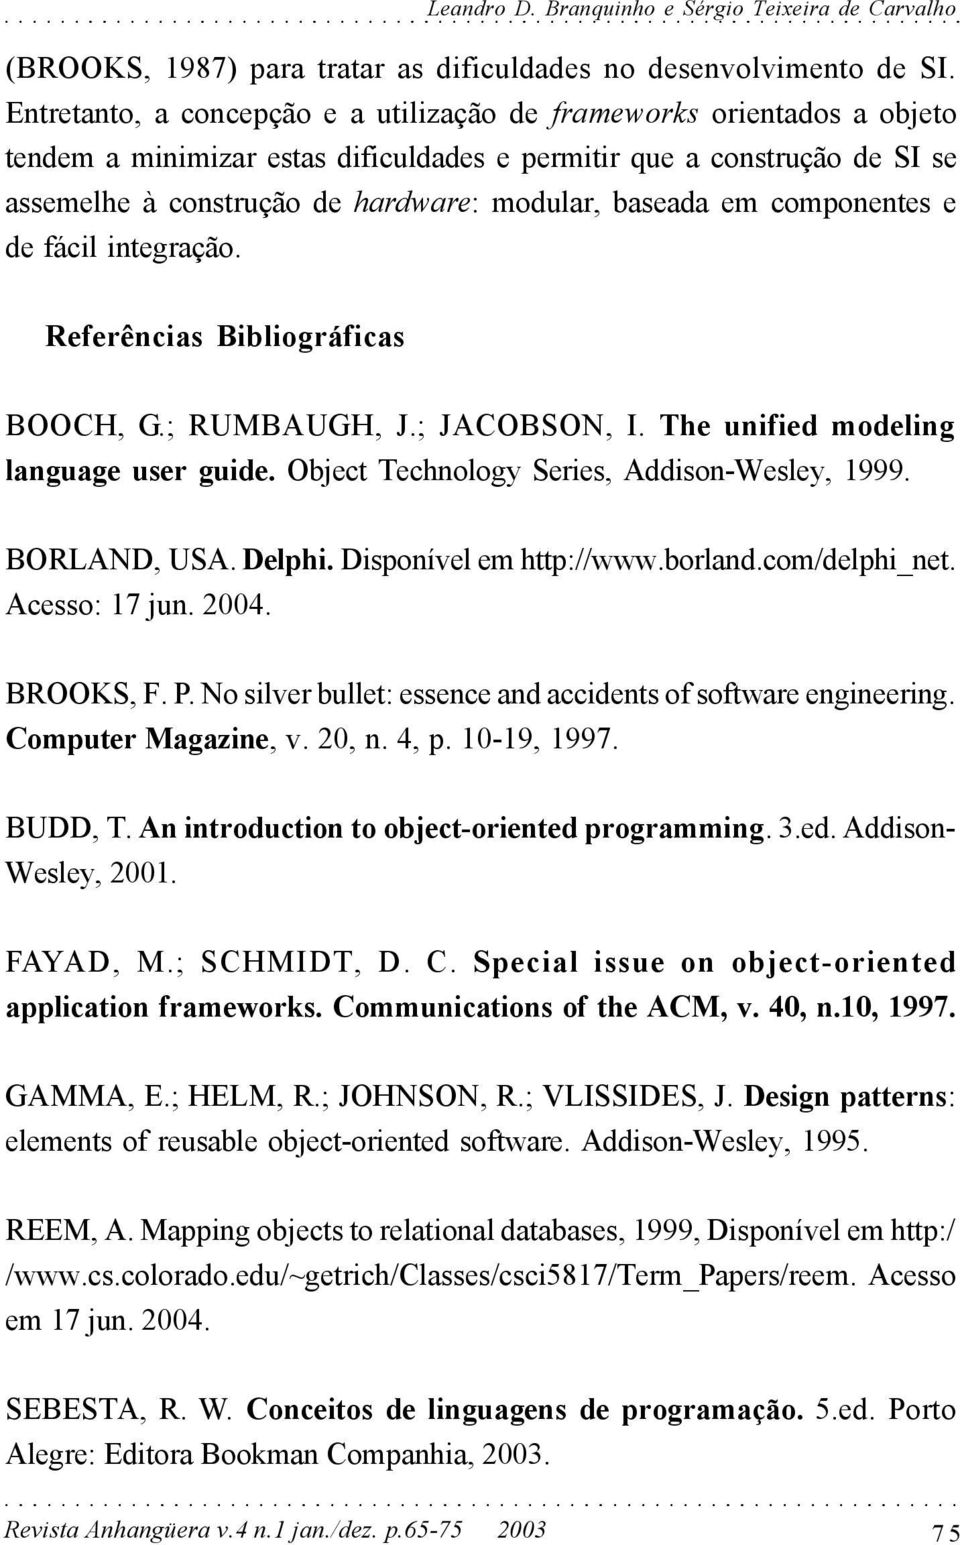 baseada em componentes e de fácil integração. Referências Bibliográficas BOOCH, G.; RUMBAUGH, J.; JACOBSON, I. The unified modeling language user guide. Object Technology Series, Addison-Wesley, 1999.